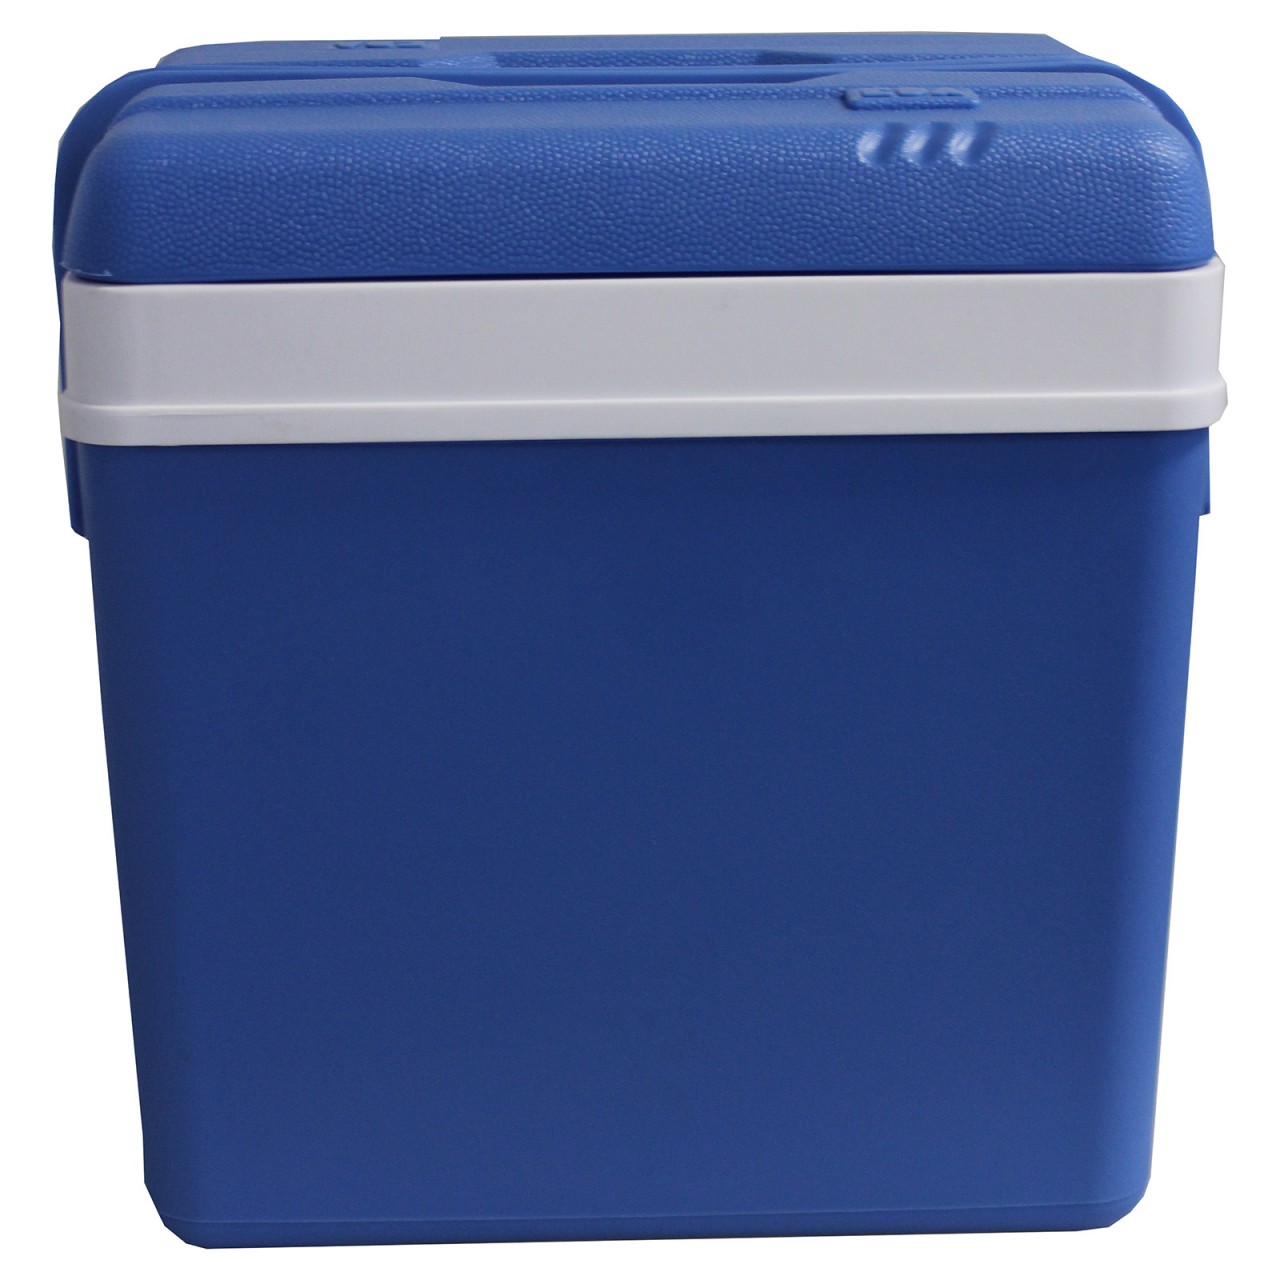 Kühlbox 24 Liter 40 x 27 x 40 cm Kunststoff blau weiss Kühltasche Kühlung NEU 